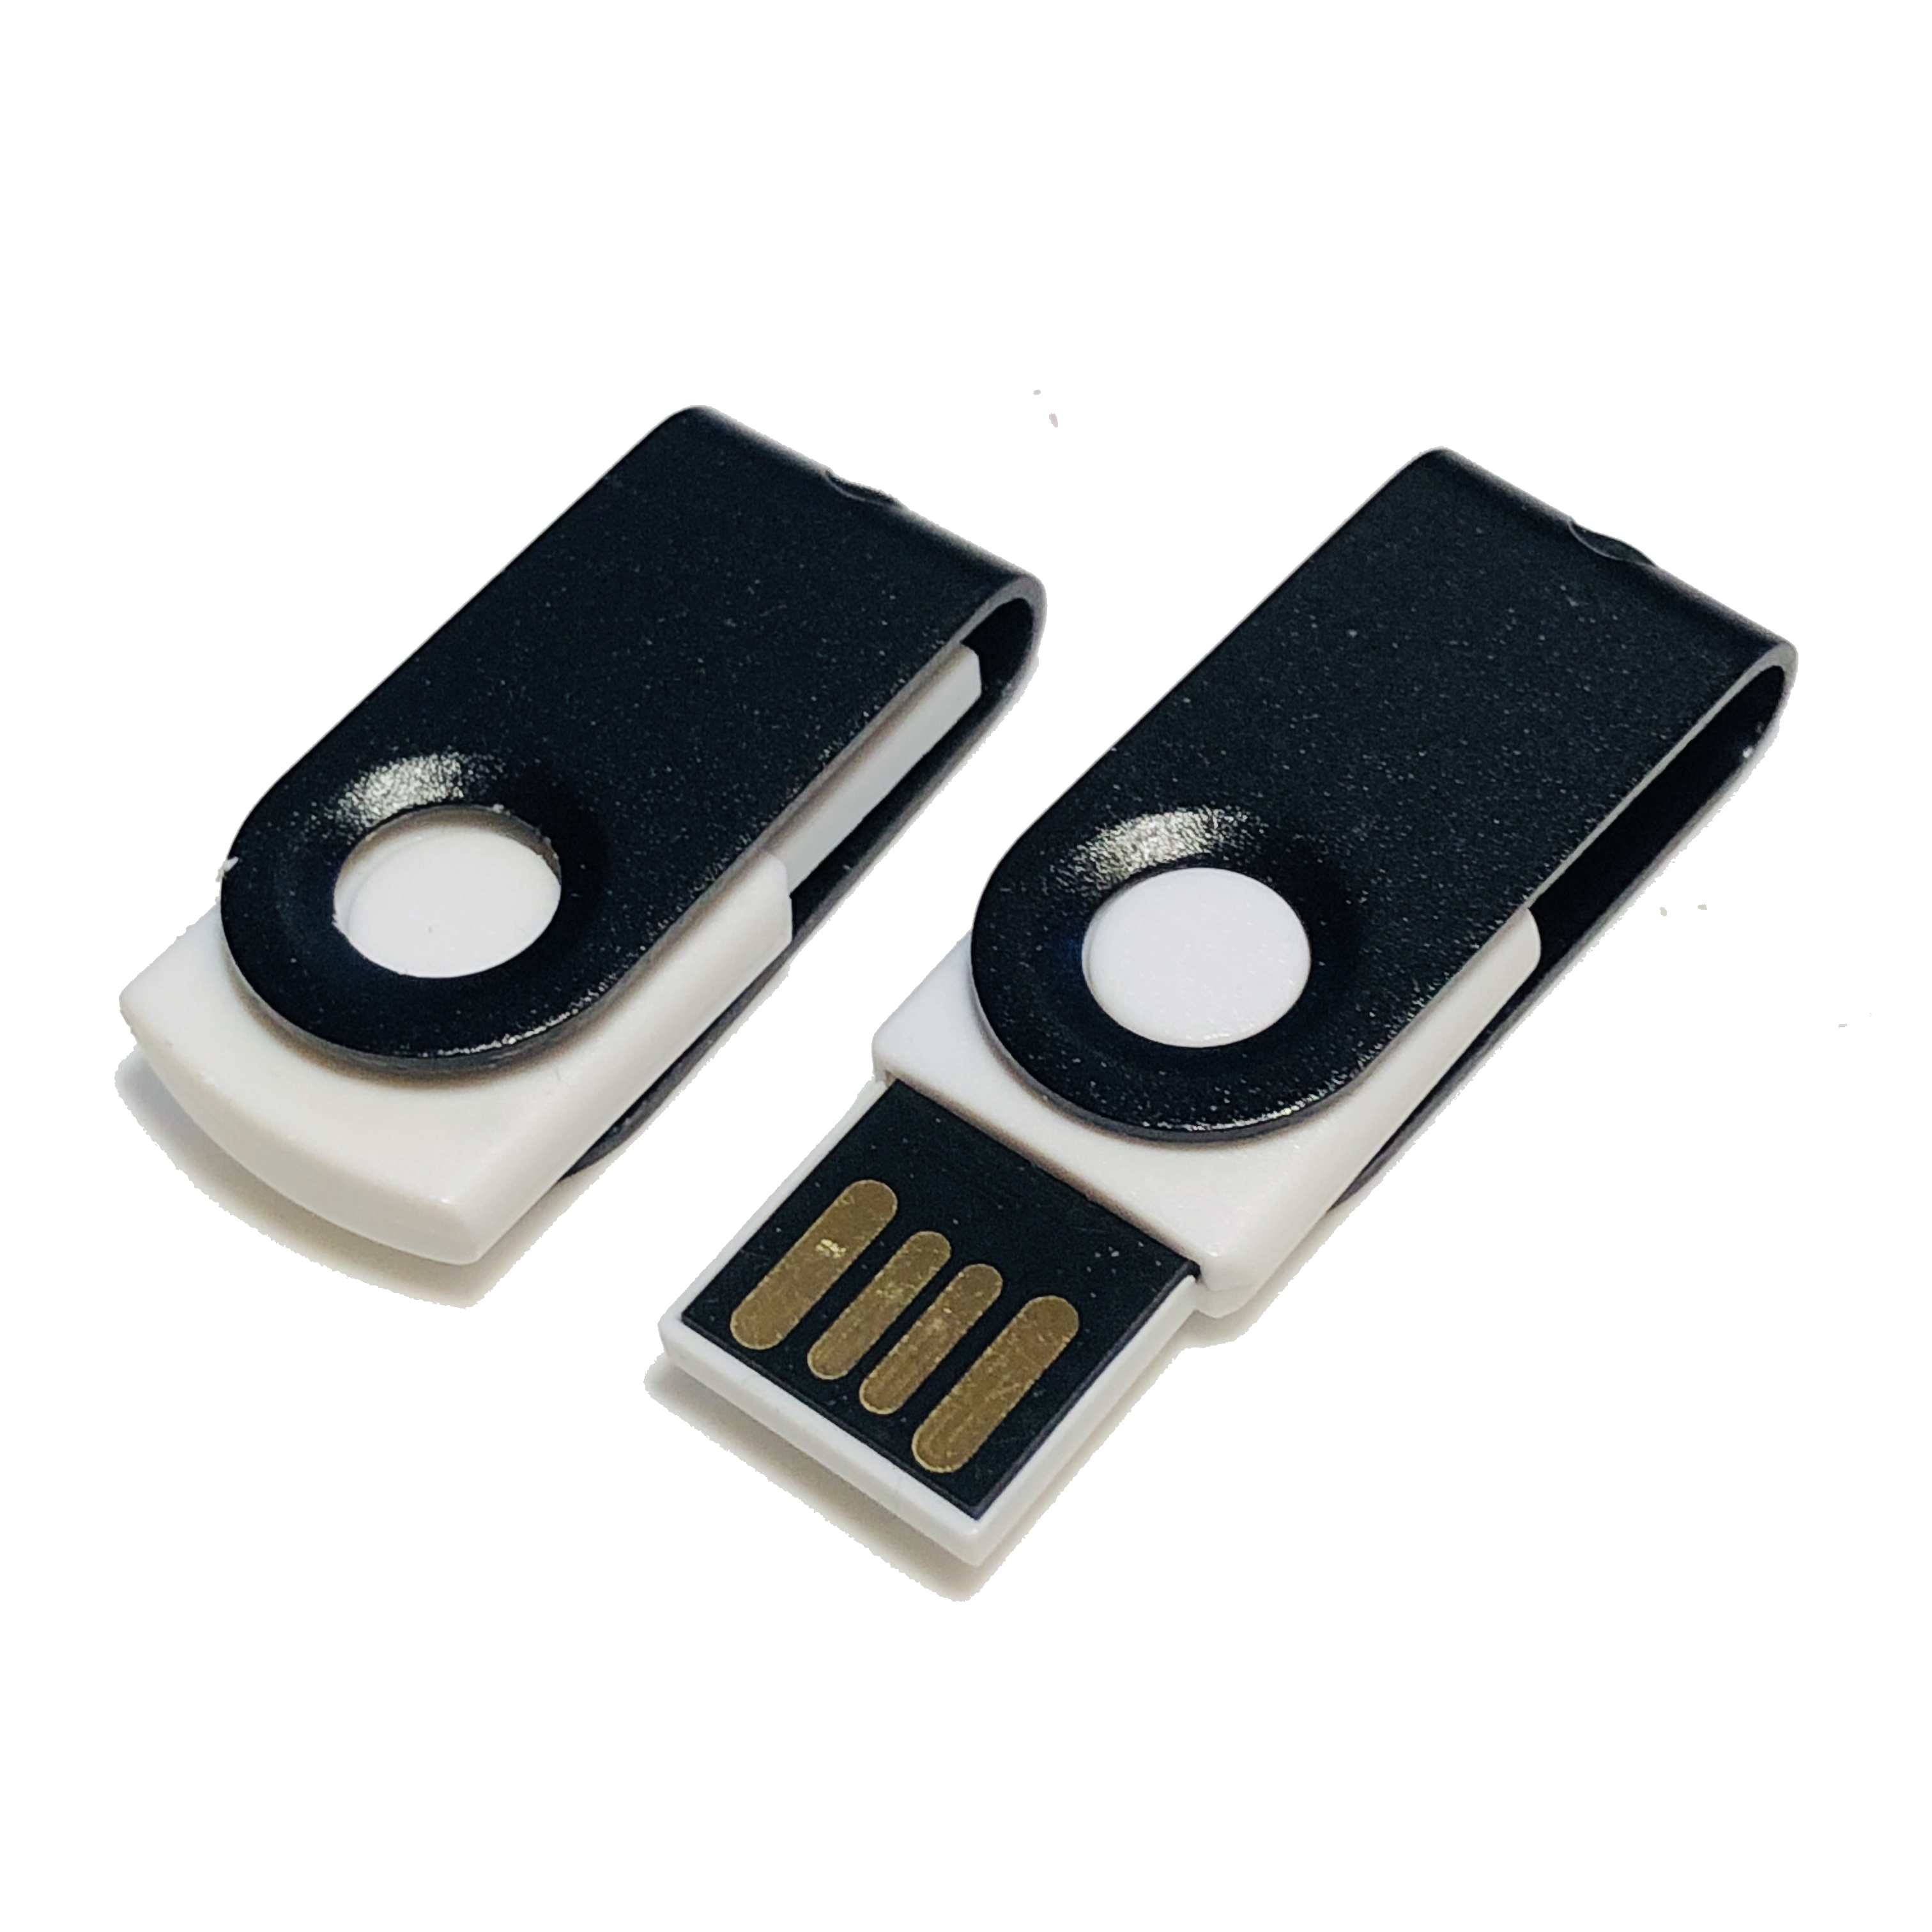 USB GERMANY ® MINI-SWIVEL USB-Stick GB) (Weiß-Schwarz, 4